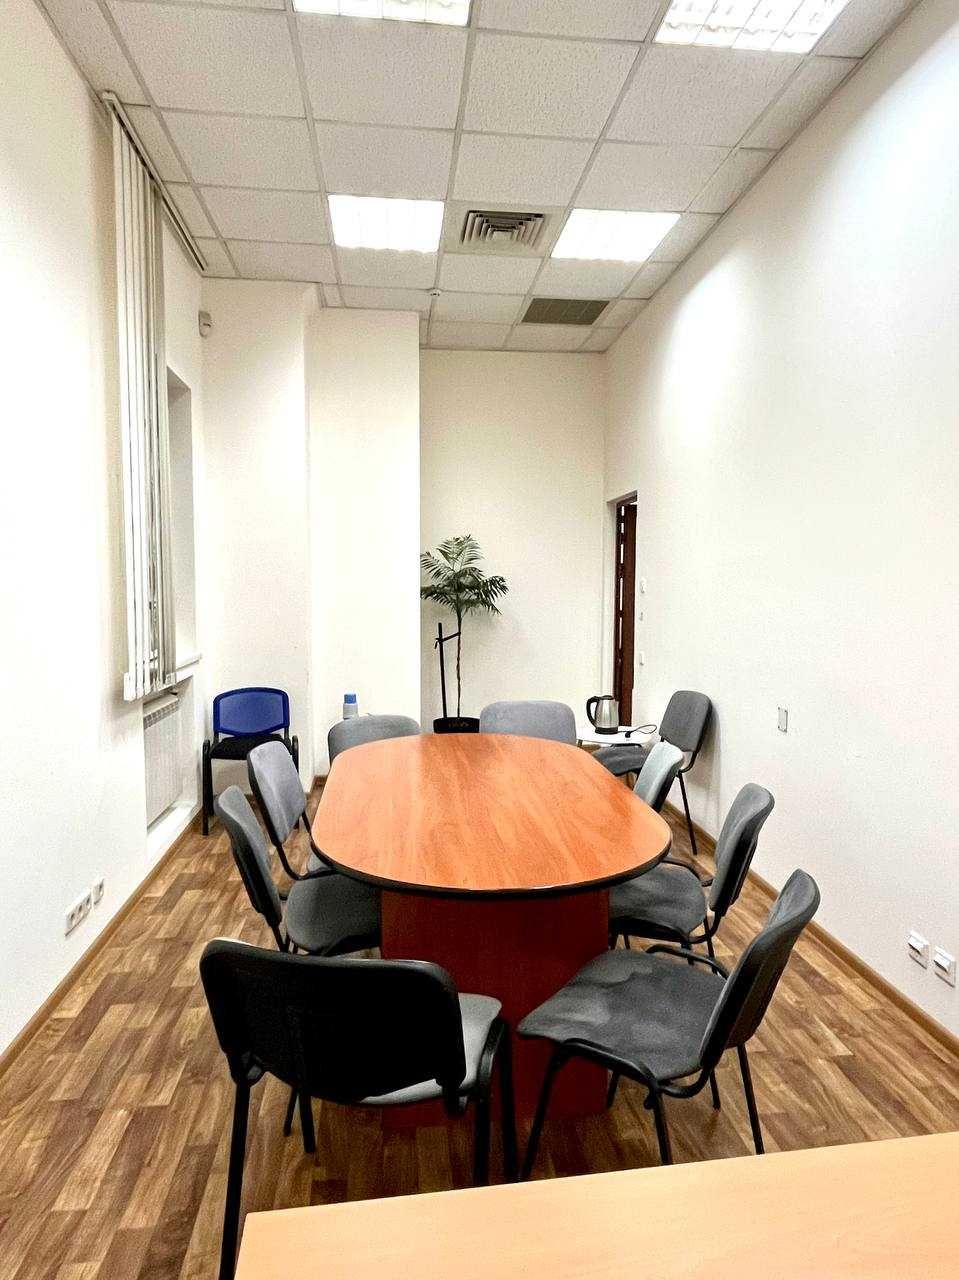 Сучасний офіс для бізнесу 110 м2. м. Звіринецька - 3 хв. Паркування